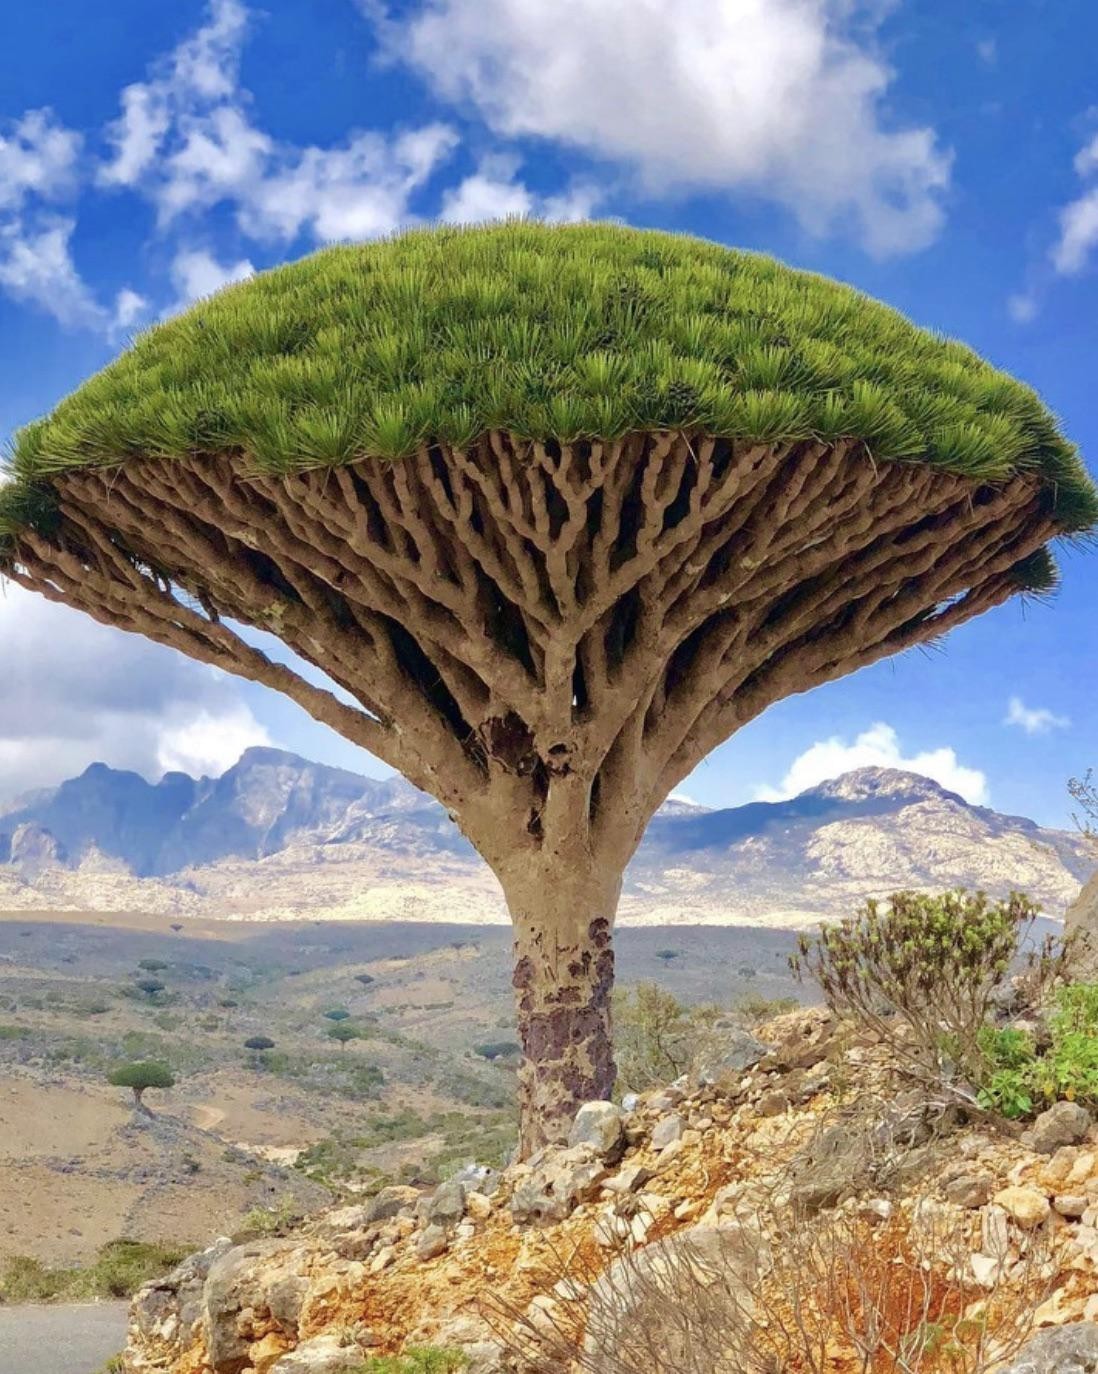 Где то на земле есть необычная страна. Драконовое дерево Сокотра. Остров Сокотра Йемен. Остров Сокотра дерево дракона. Деревья острова Сокотра Йемен.